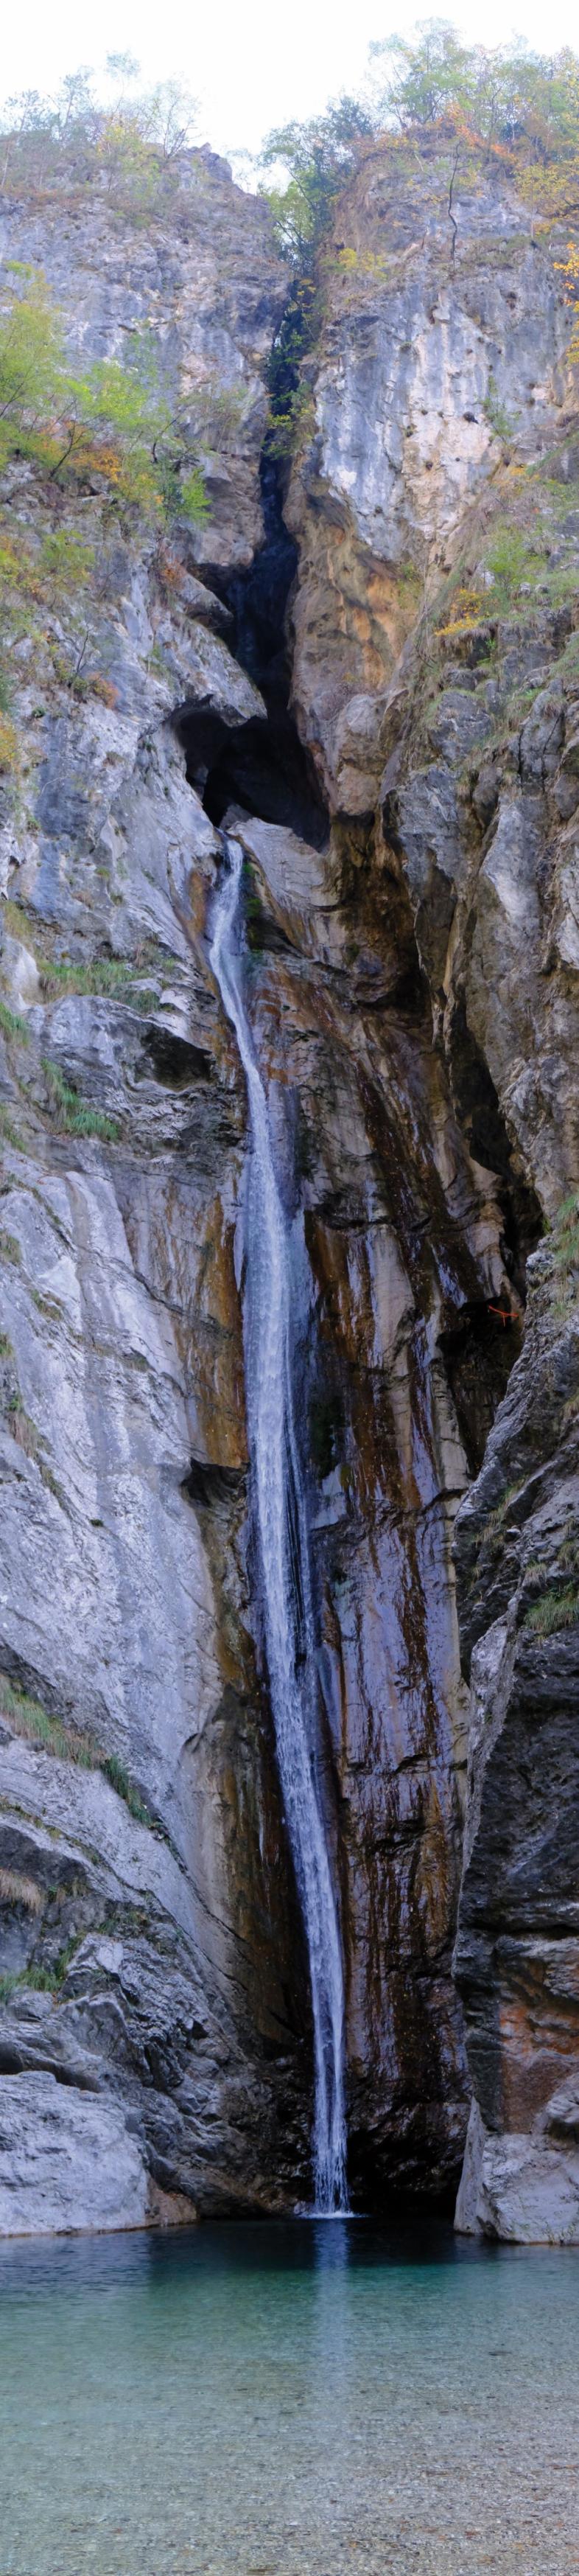 Ein sehr hoher und schmaler Wasserfall ergießt sich zwischen steilen Felswänden in ein glasklares natürliches Wasserbecken mit Kieselgrund.